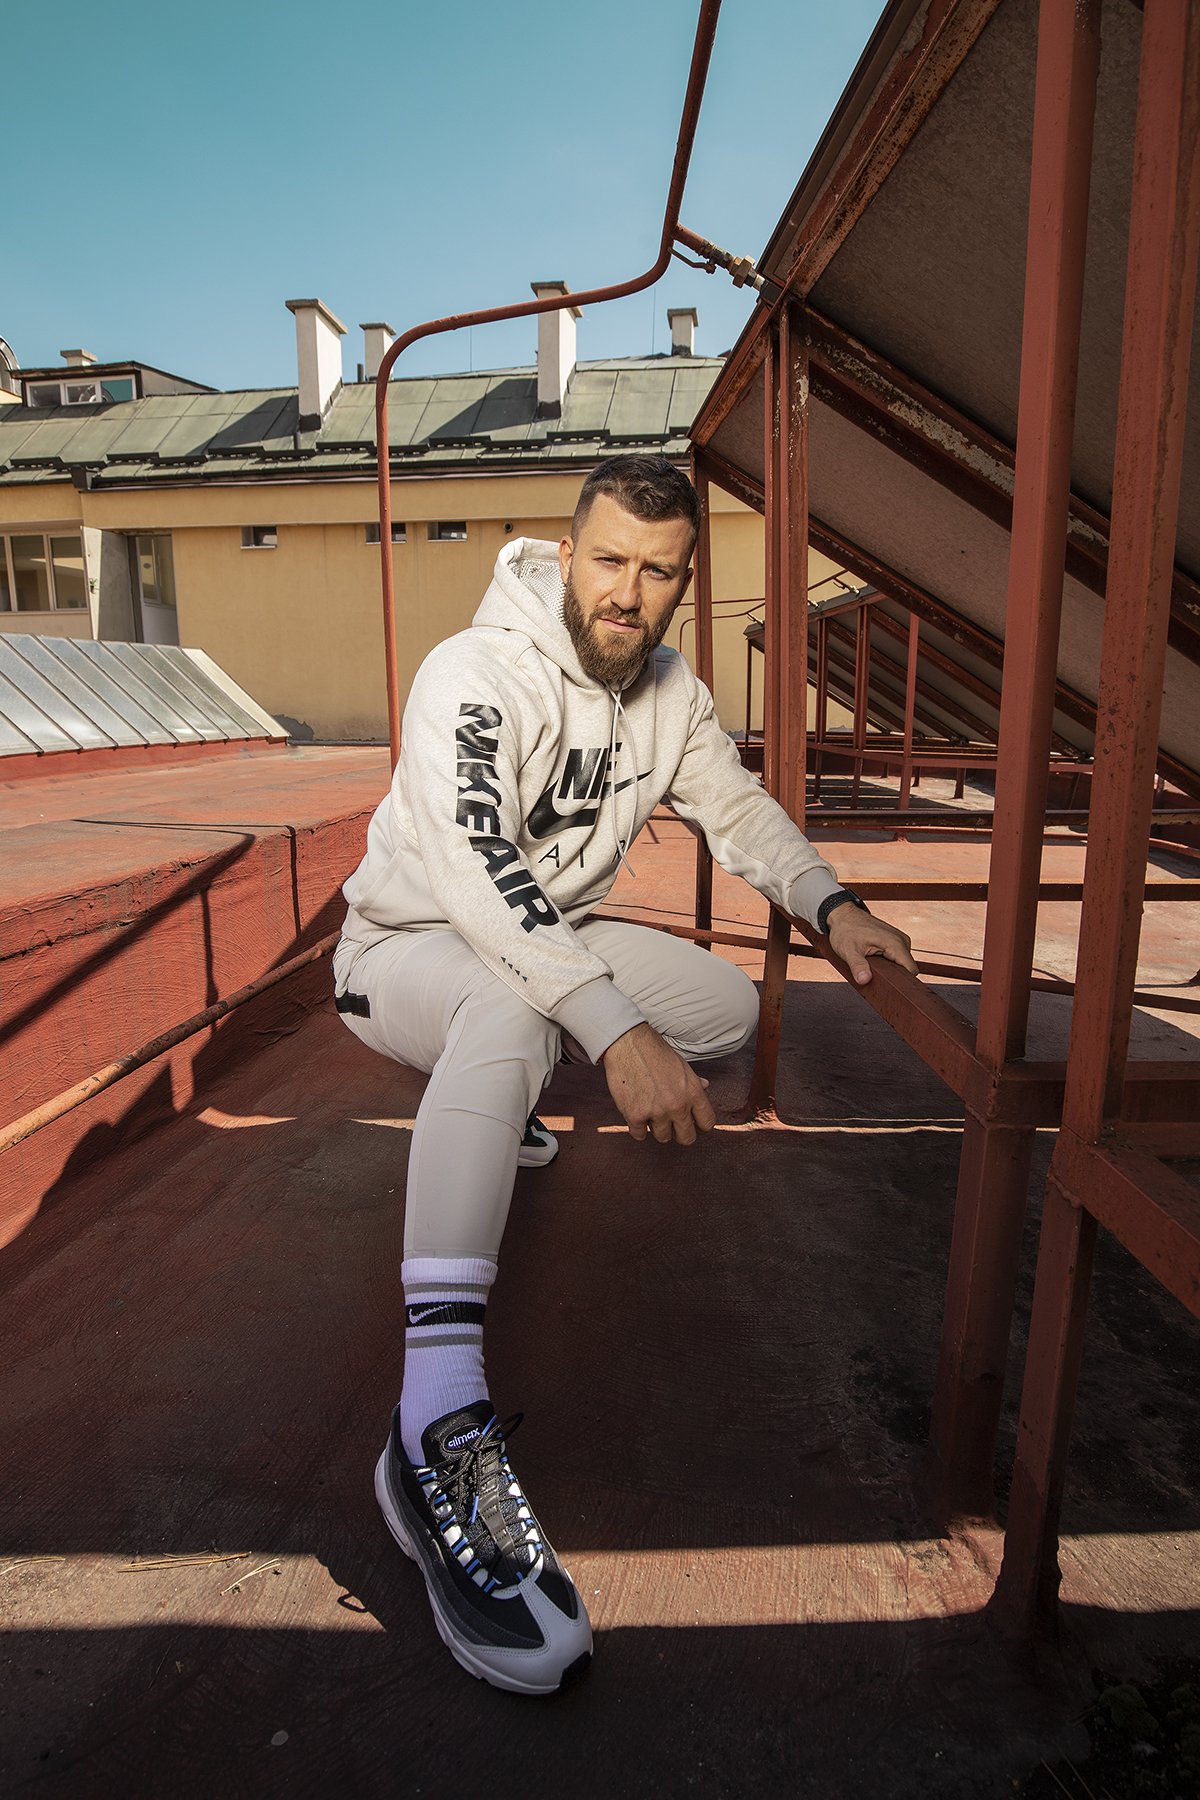 Ванко Георгиев е основател на уникалната методика PUMP & RUN, която комбинира силови упражнения с лека атлетика. Методиката му помага на всички хора трениращи по нея, да се чувстват и изглеждат добре без да изпадат в крайности. Заедно с #NikeSportswear ви